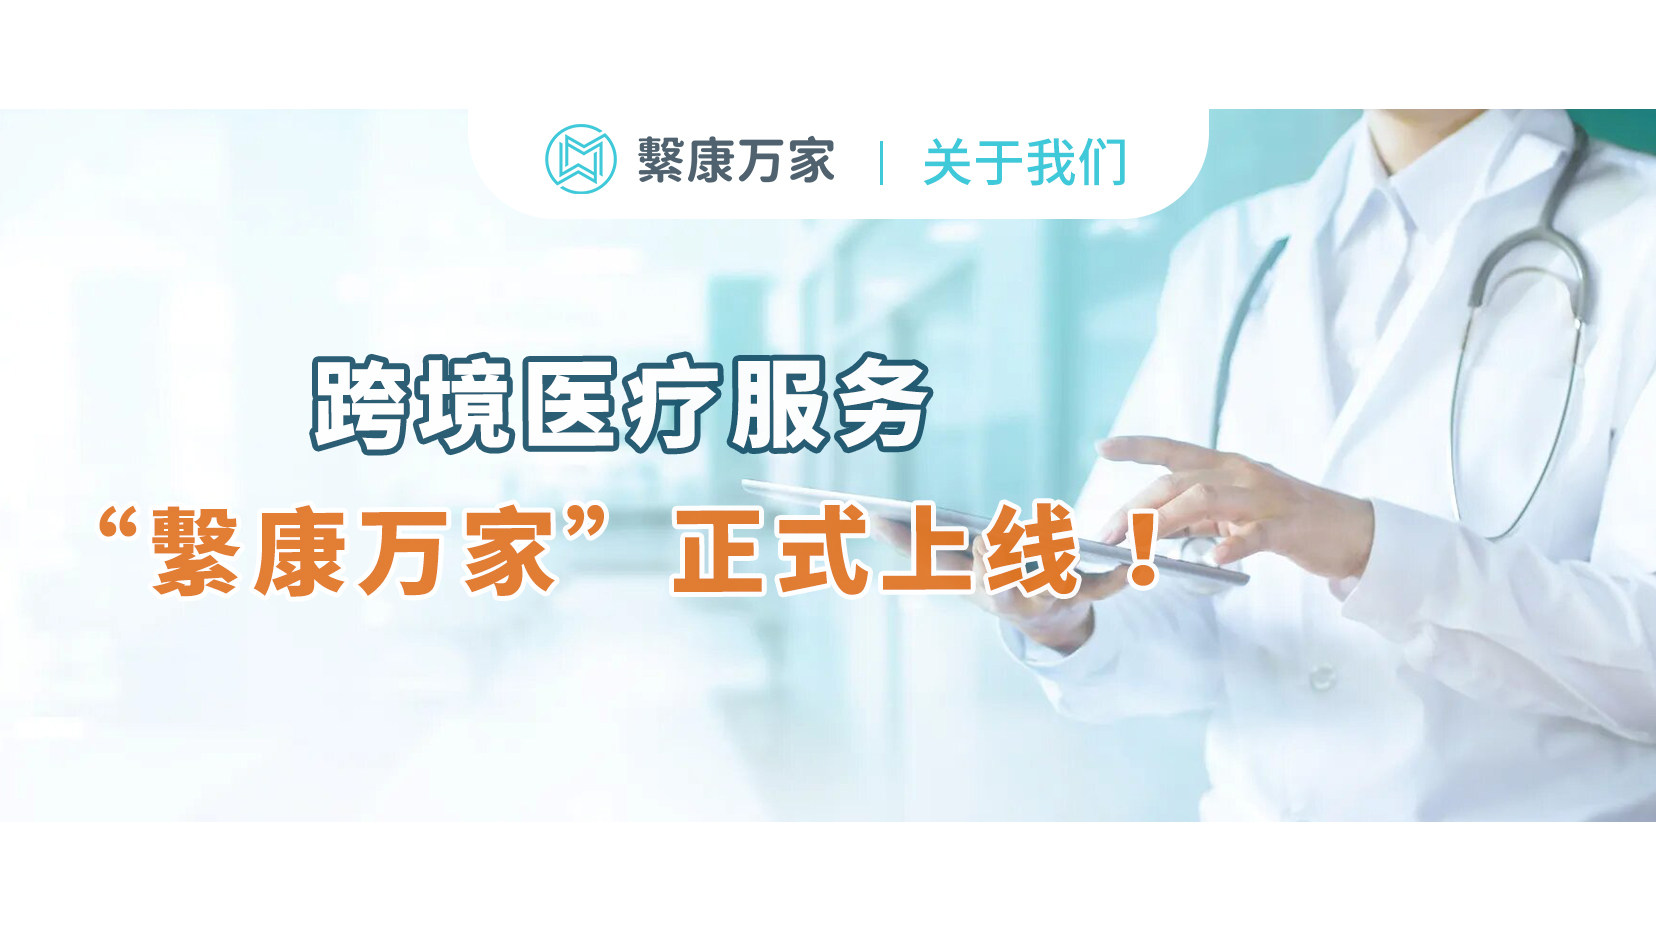 跨境医疗服务“繫康万家”正式上线 ，开启“医疗无国界“健康时代！